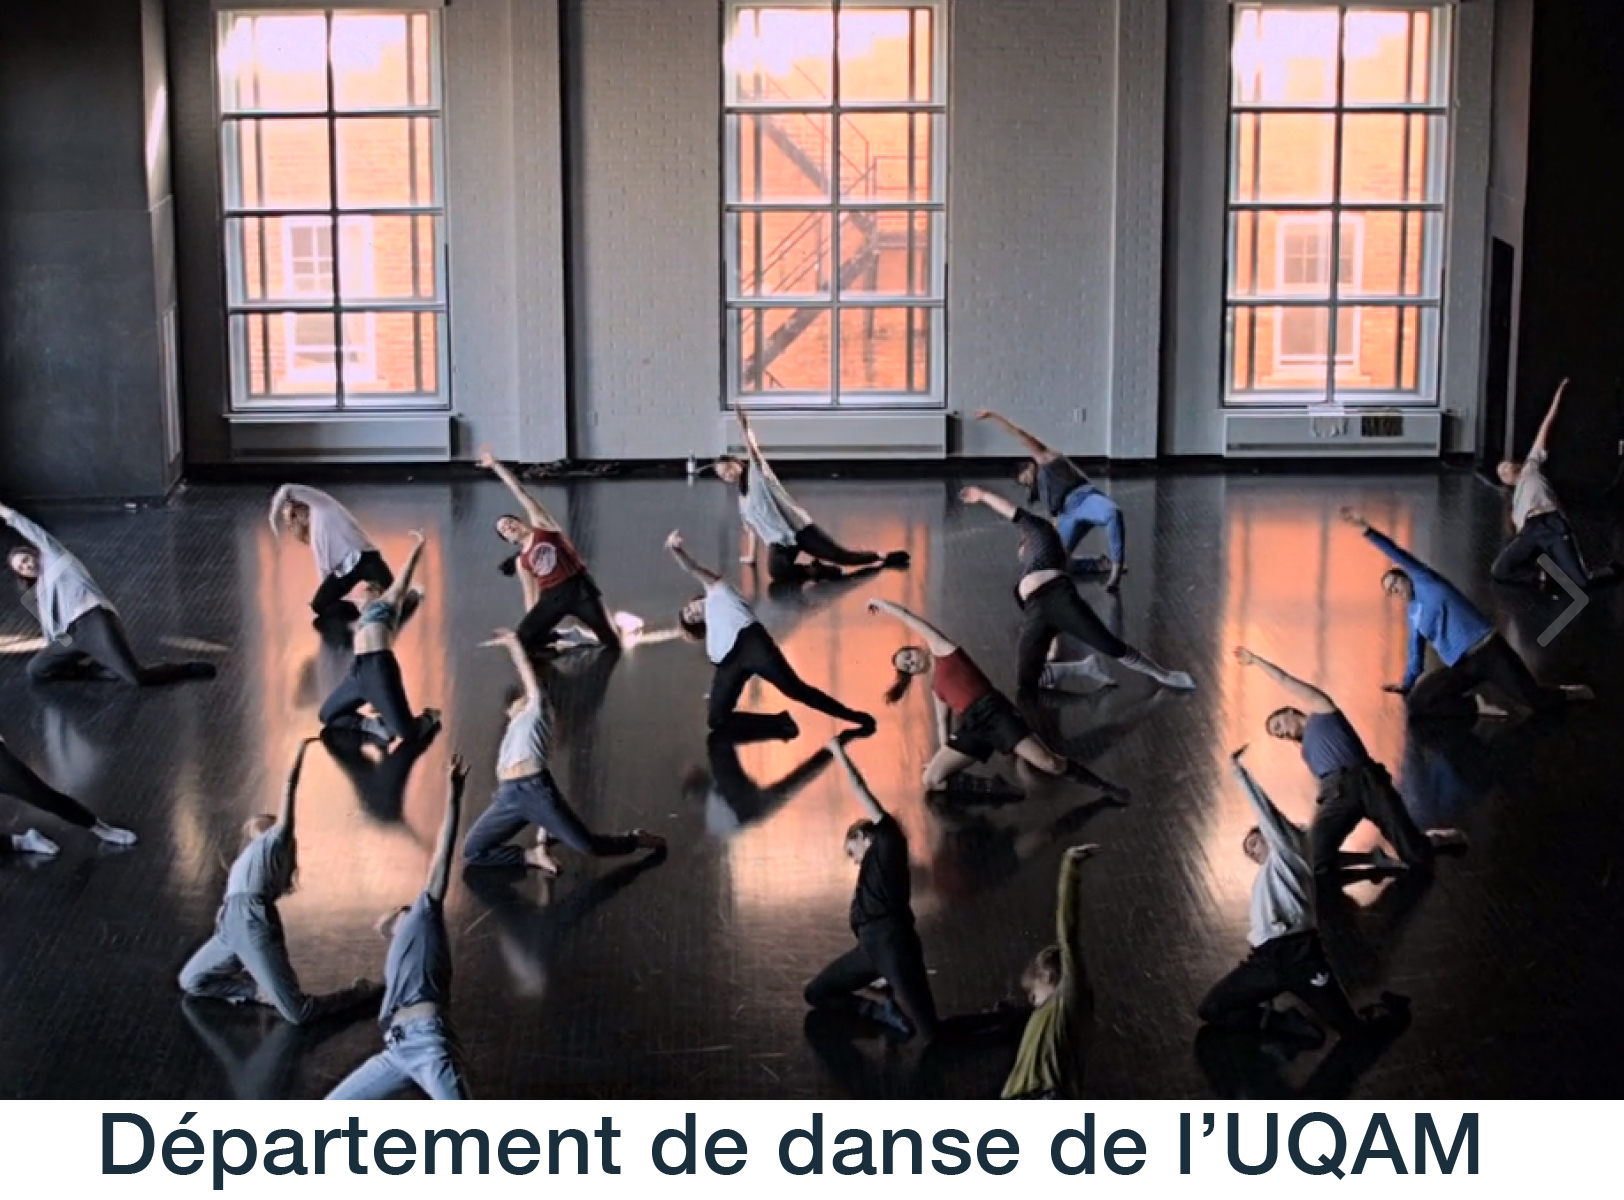 Le Département de danse de l'UQAM